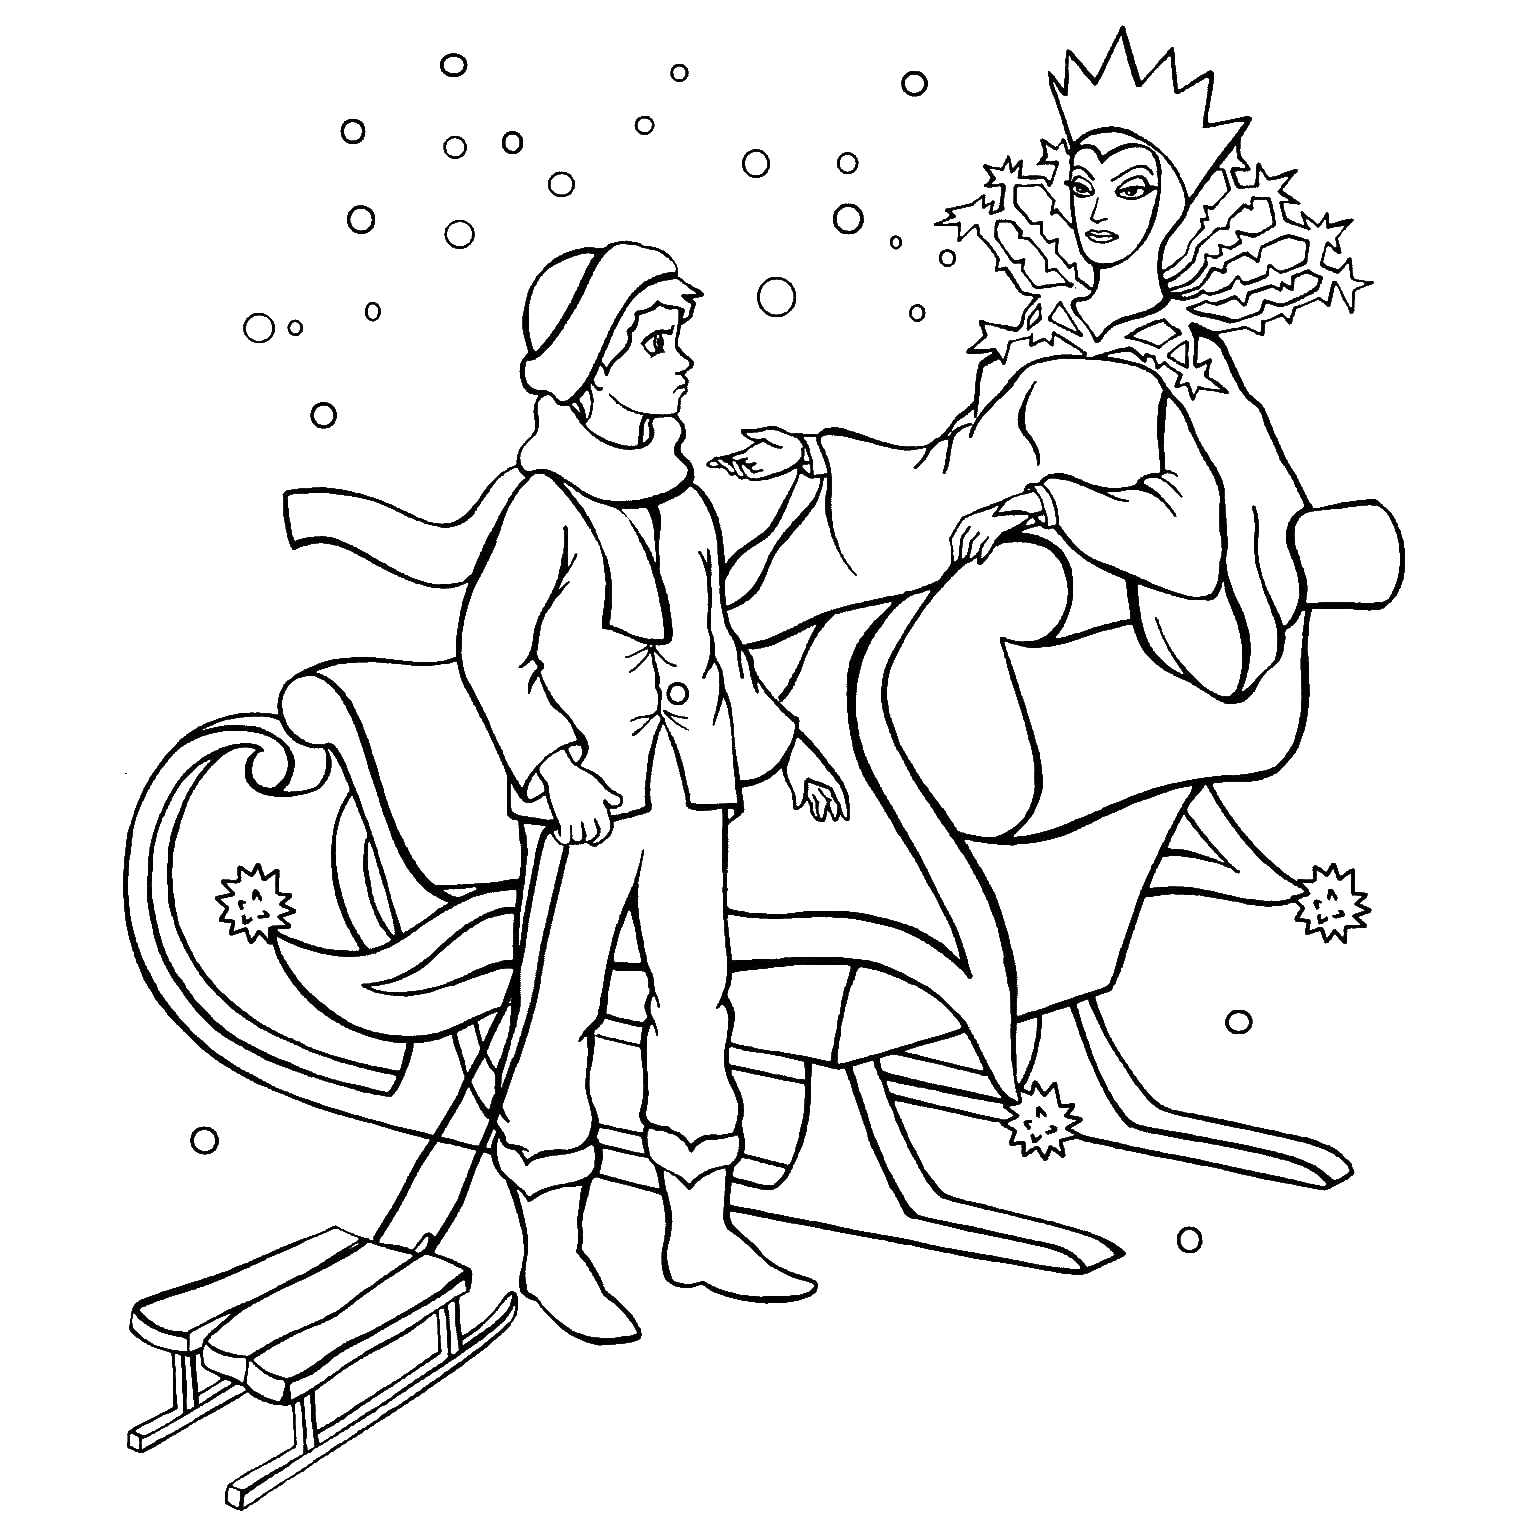 Иллюстрация к сказкам Андерсена раскраска Снежная Королева. Раскраска к сказке Снежная Королева для детей. Рисунок снежная королева 5 класс легко